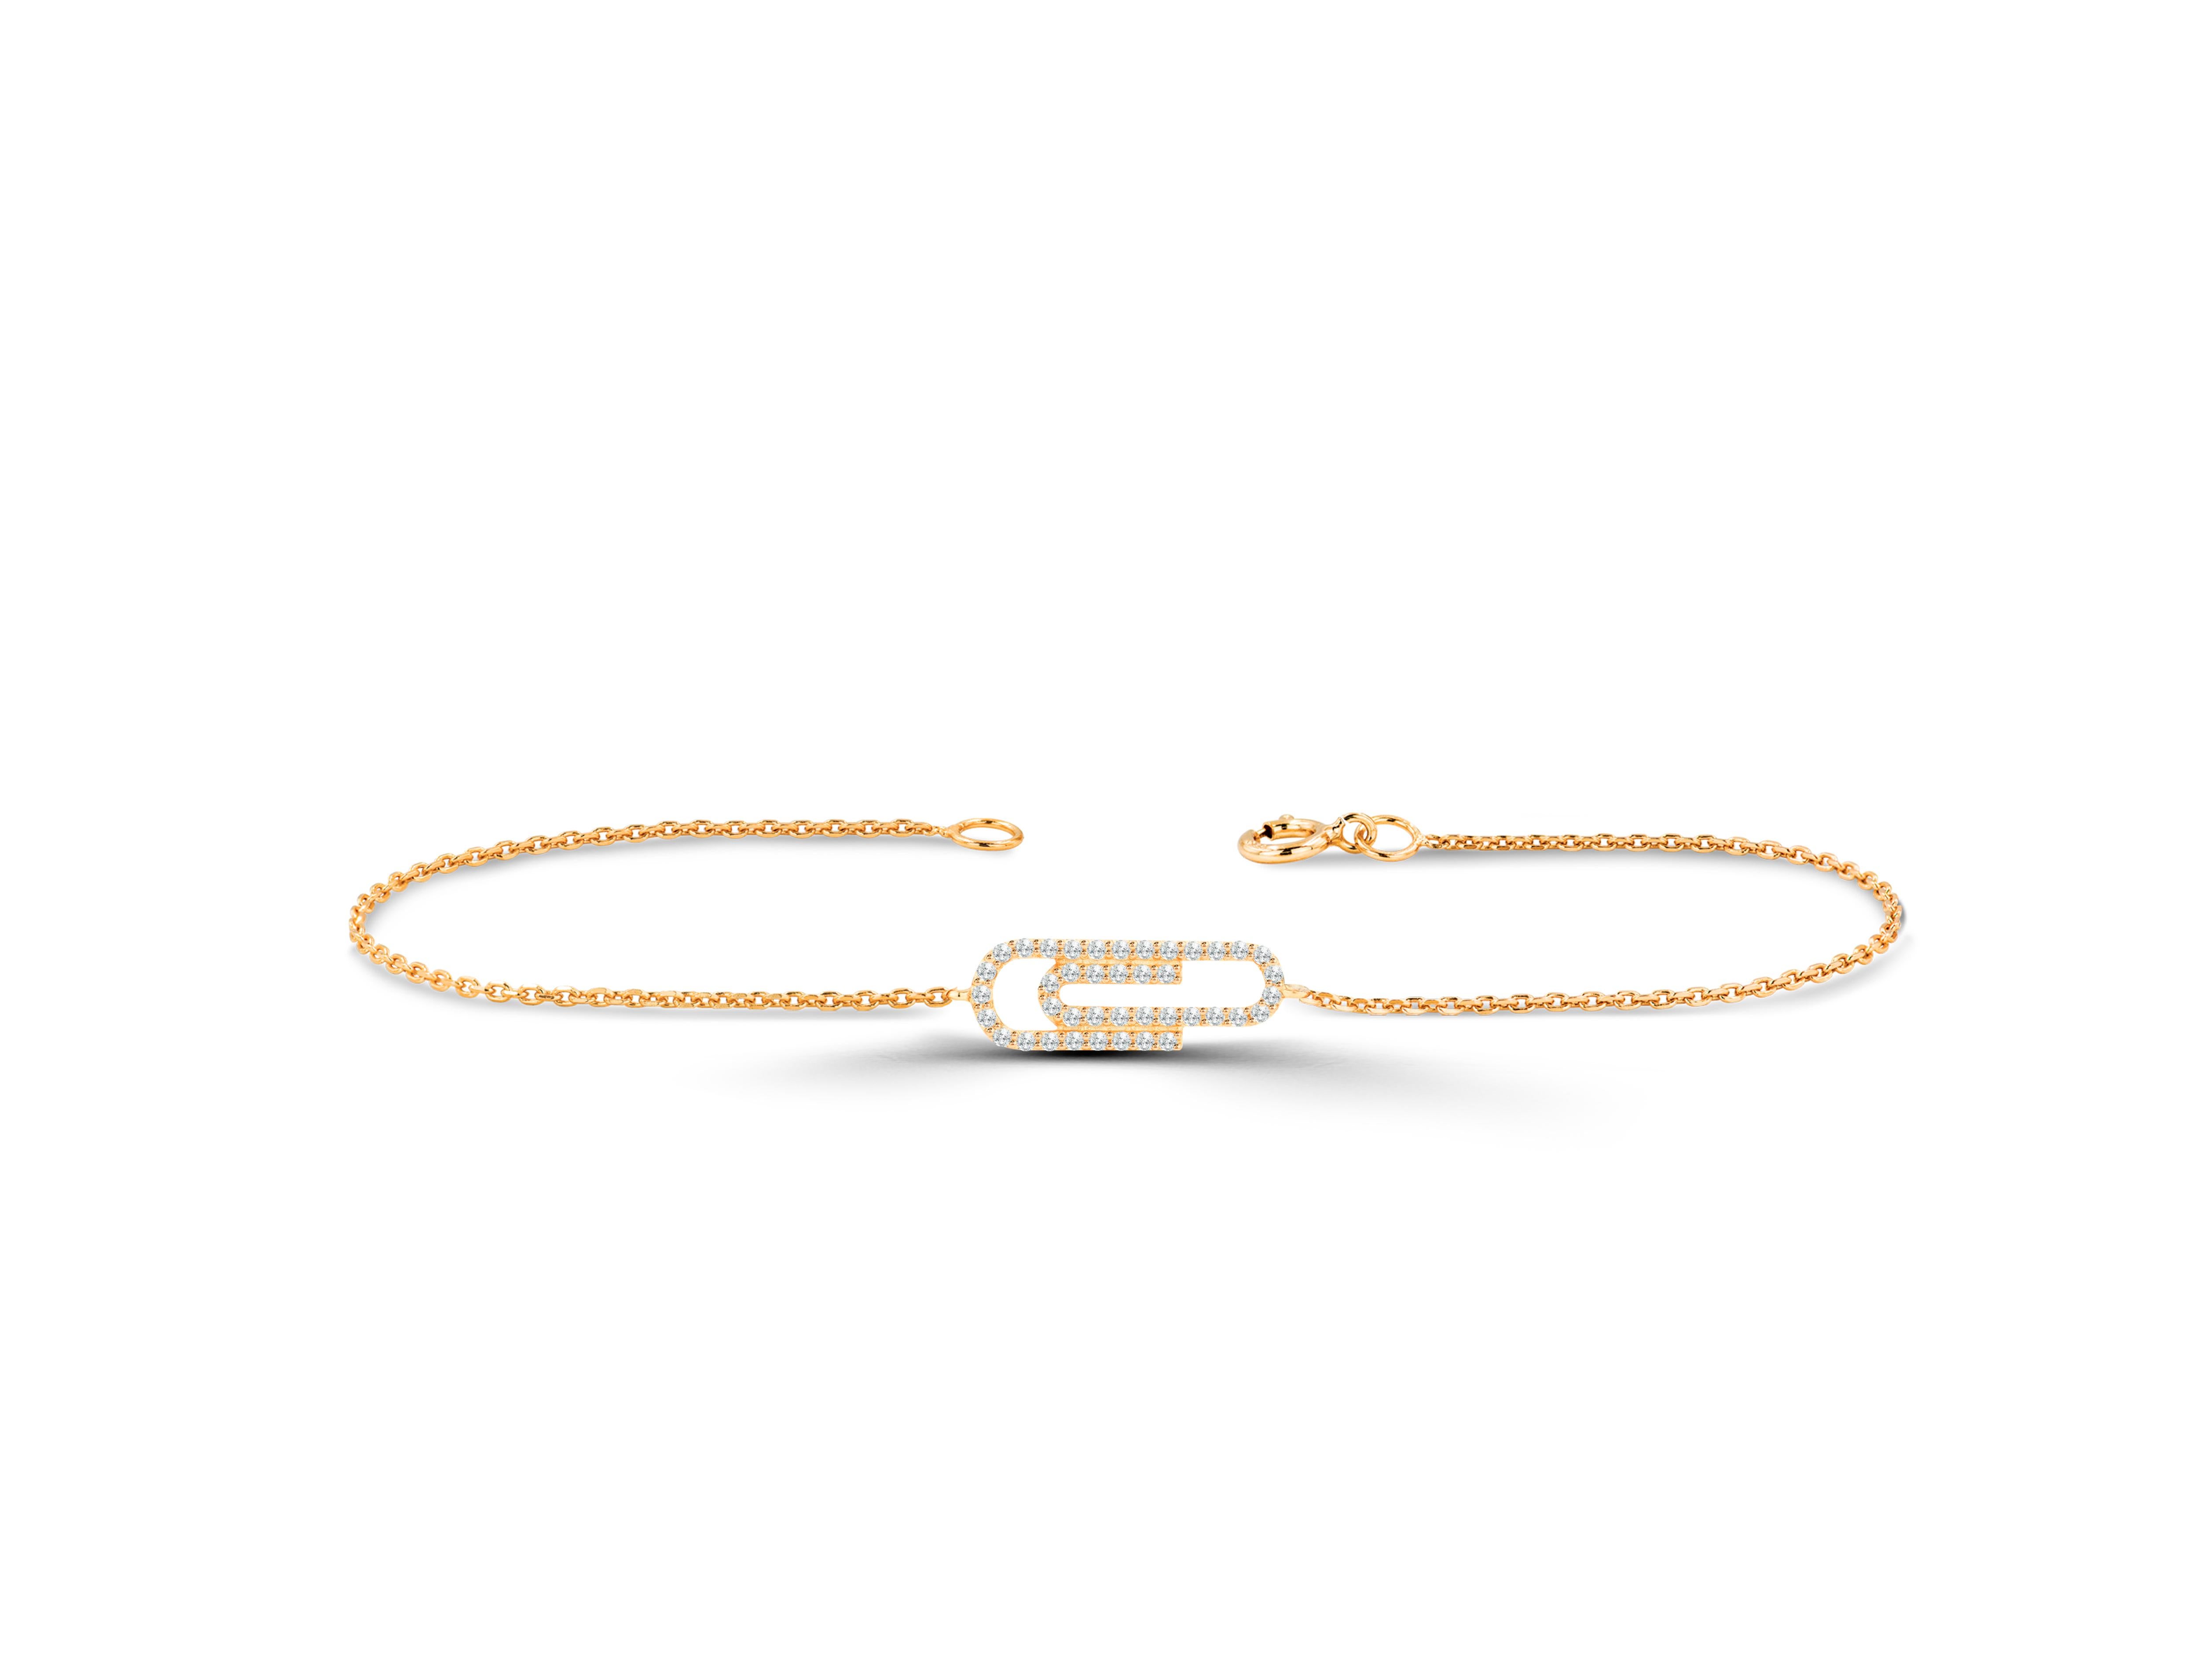 Beau et élégant, ce bracelet Trombone est fabriqué en or pur et se compose de diamants véritables et naturels. Ce bracelet donne un aspect sophistiqué et élégant à votre main. Le bracelet peut être personnalisé dans la couleur dorée de votre choix.